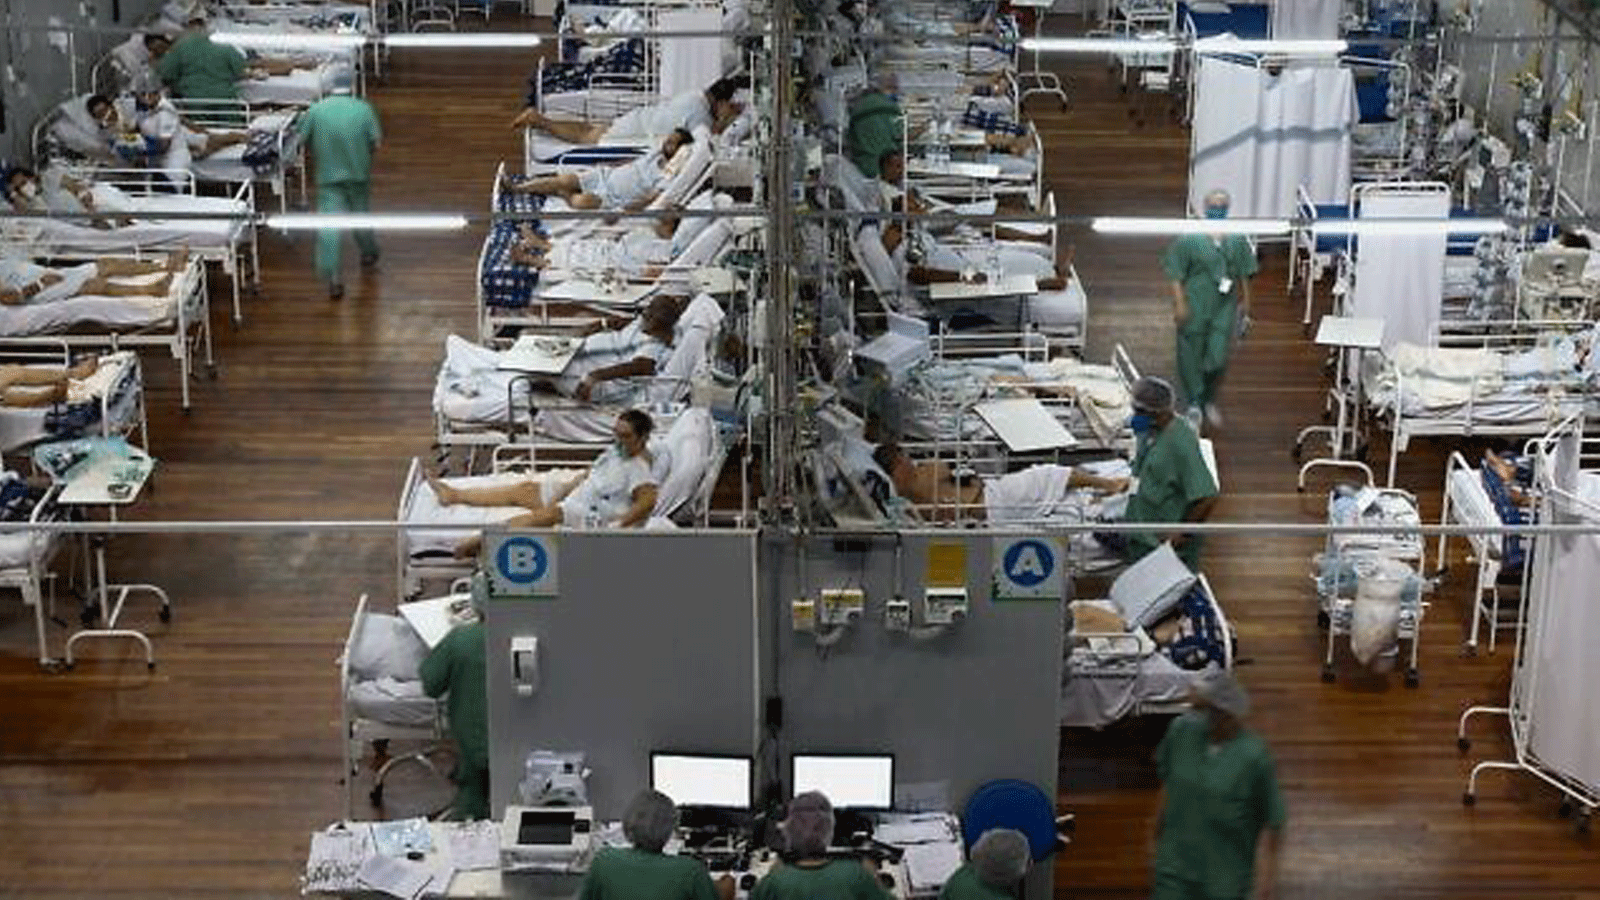 مرضى مصابون بـ COVID-19 في مستشفى ميداني أقيم في صالة رياضية، في سانتو أندريه، ولاية ساو باولو، البرازيل، في 26 آذار/مارس 2021